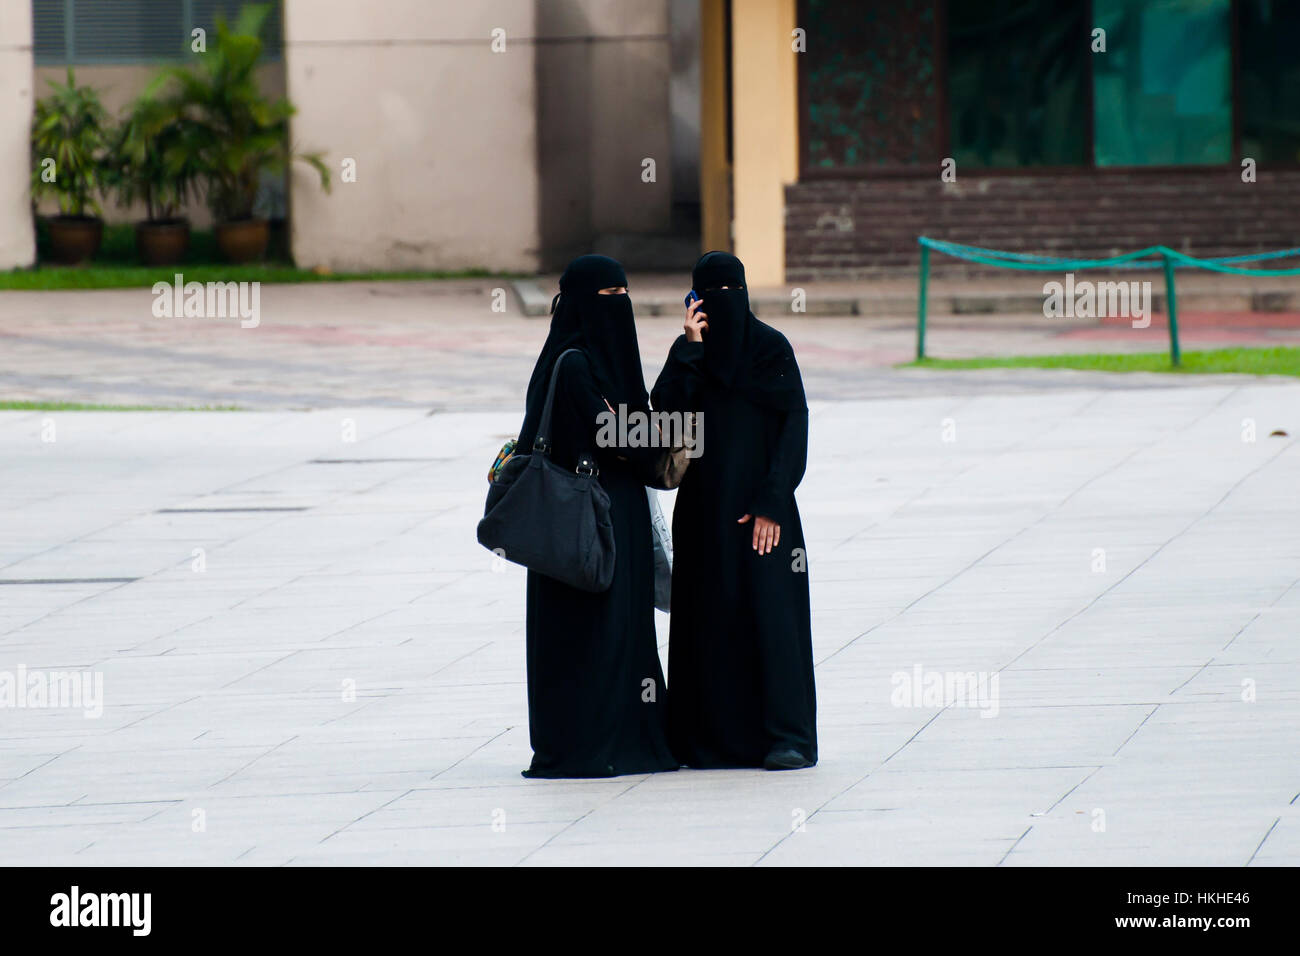 Women in Burqa - Kuala Lumpur - Malaysia Stock Photo